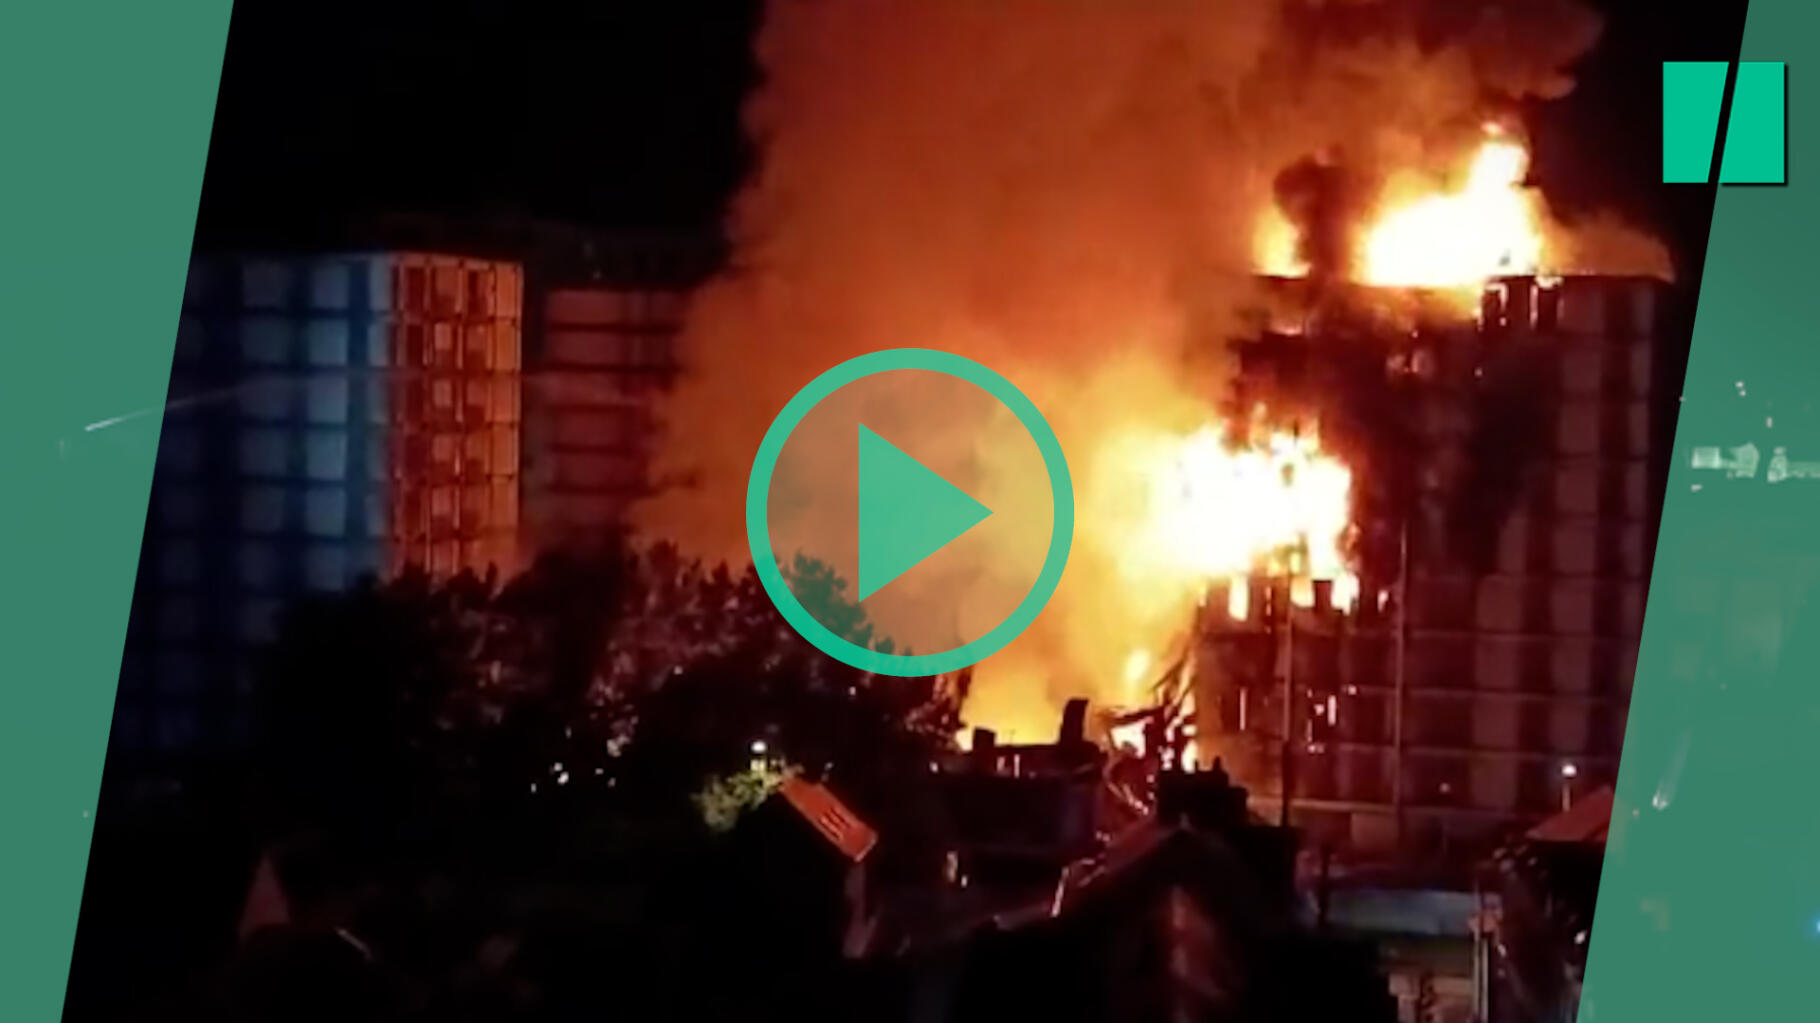 Les images impressionnantes de l’incendie qui a ravagé deux immeubles à Rouen